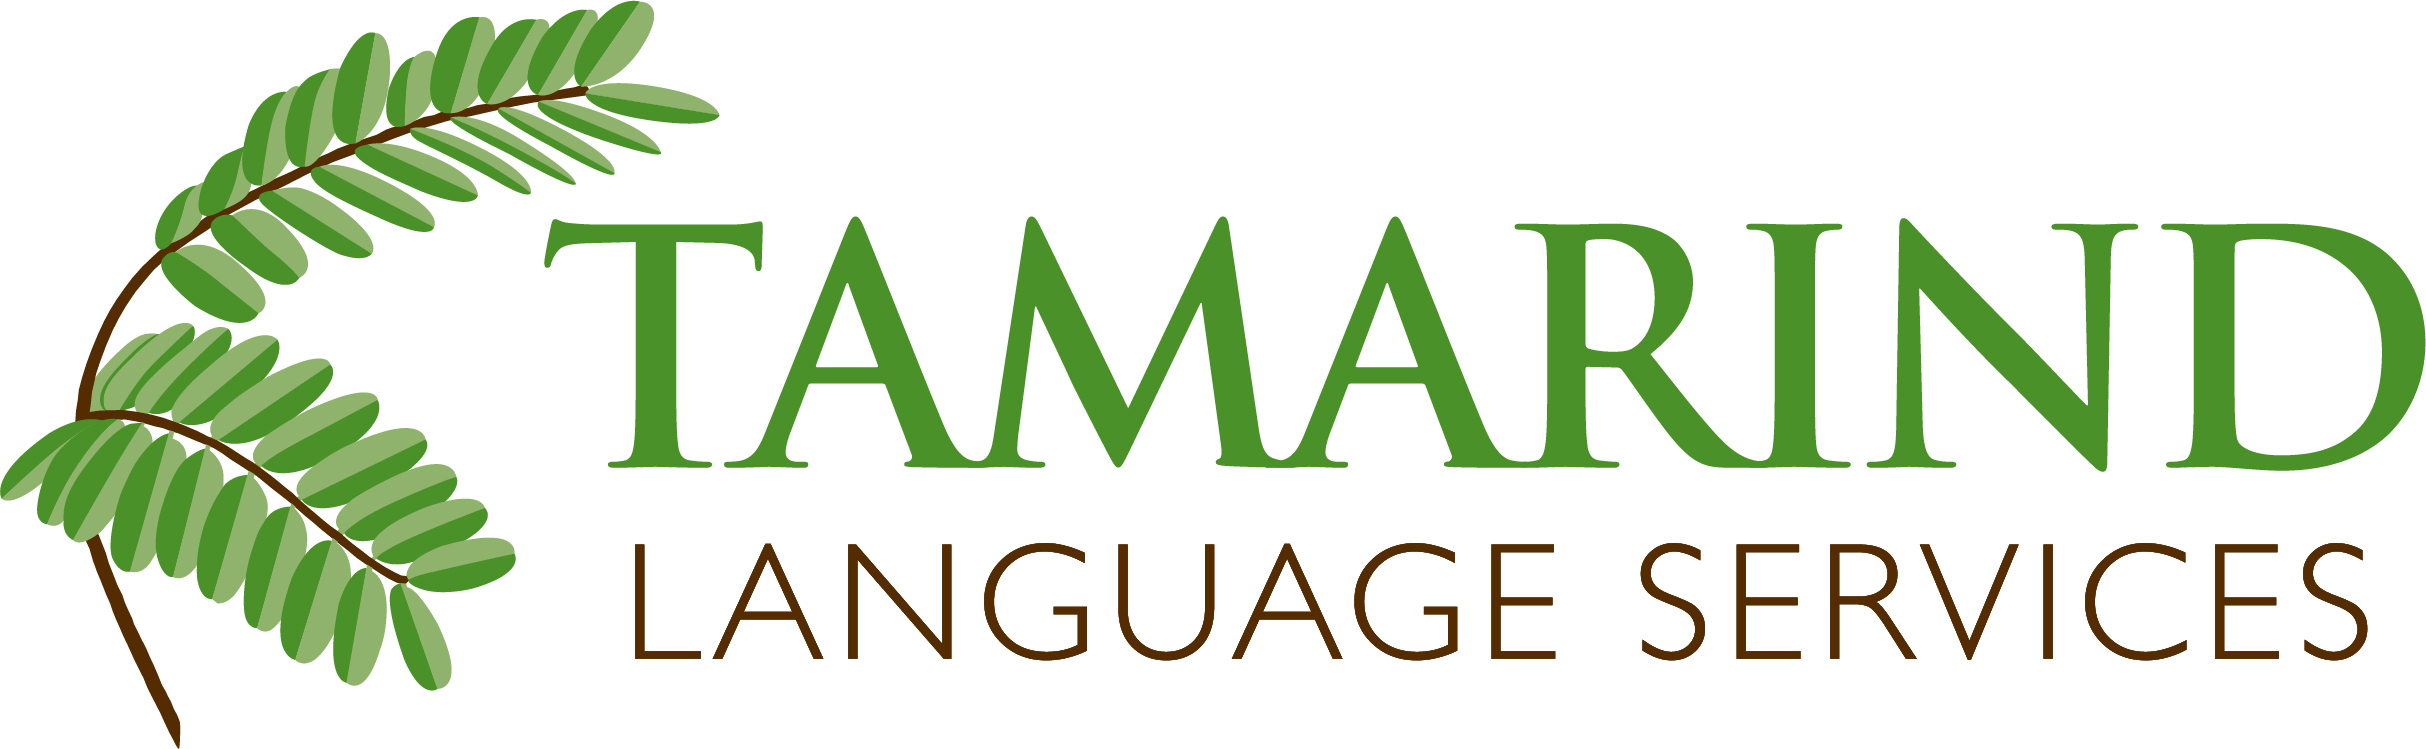 Tamarind Language Services logo